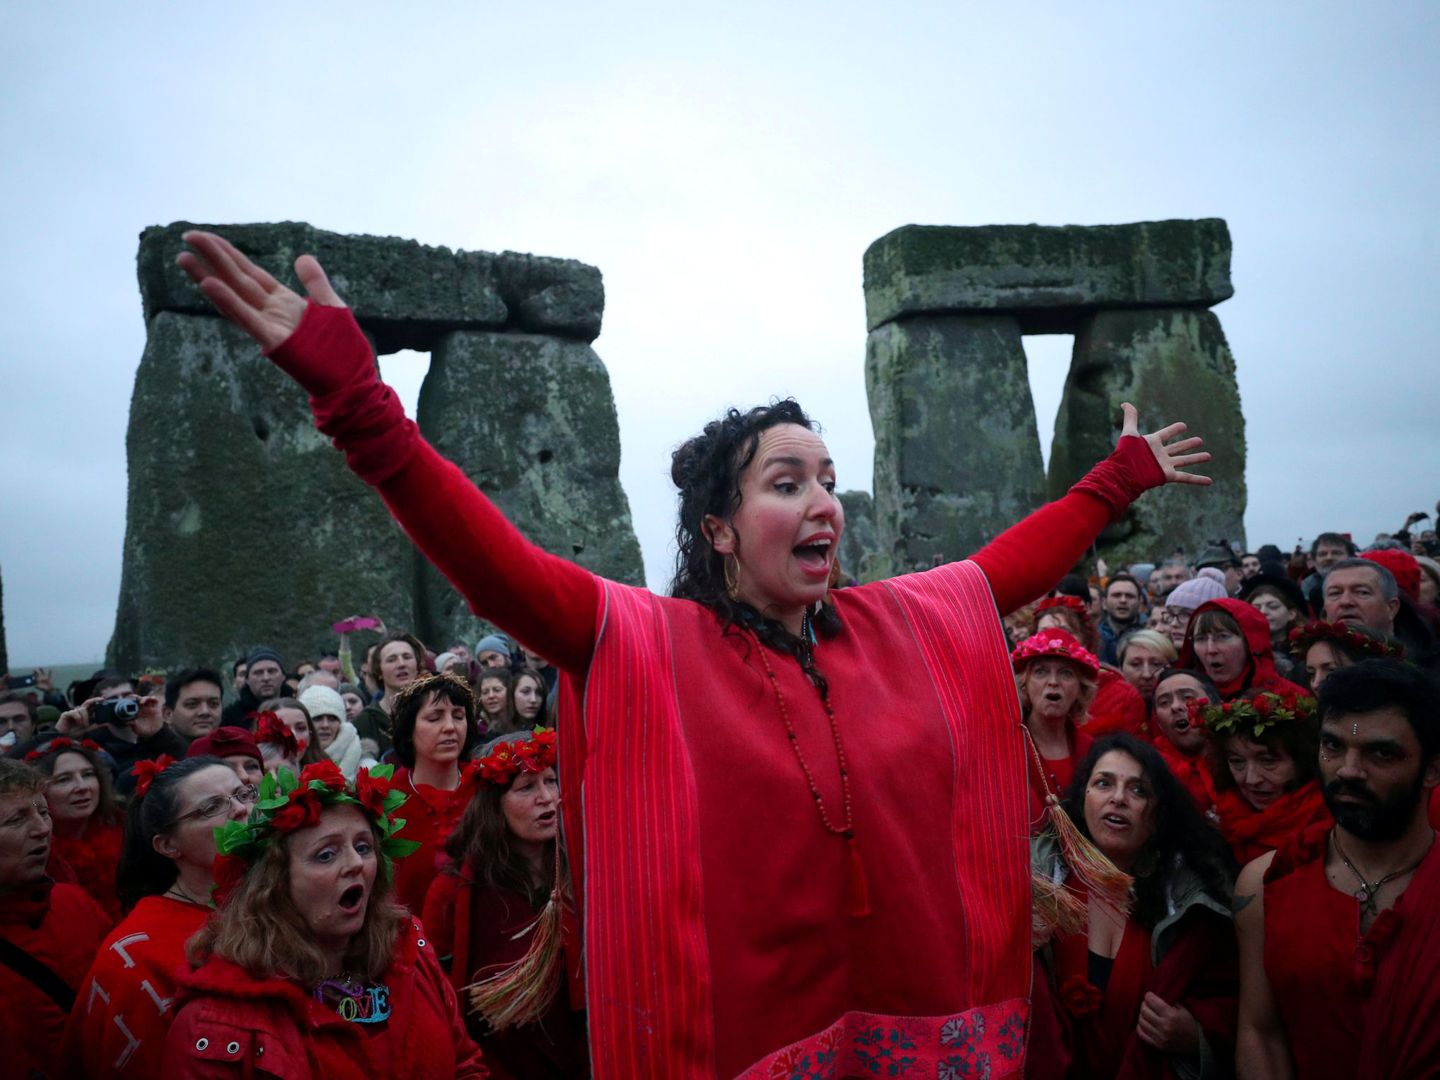 Miles de visitantes se acercan a Stonehenge a celebrar el solsiticio de invierno cada año. (Reuters)